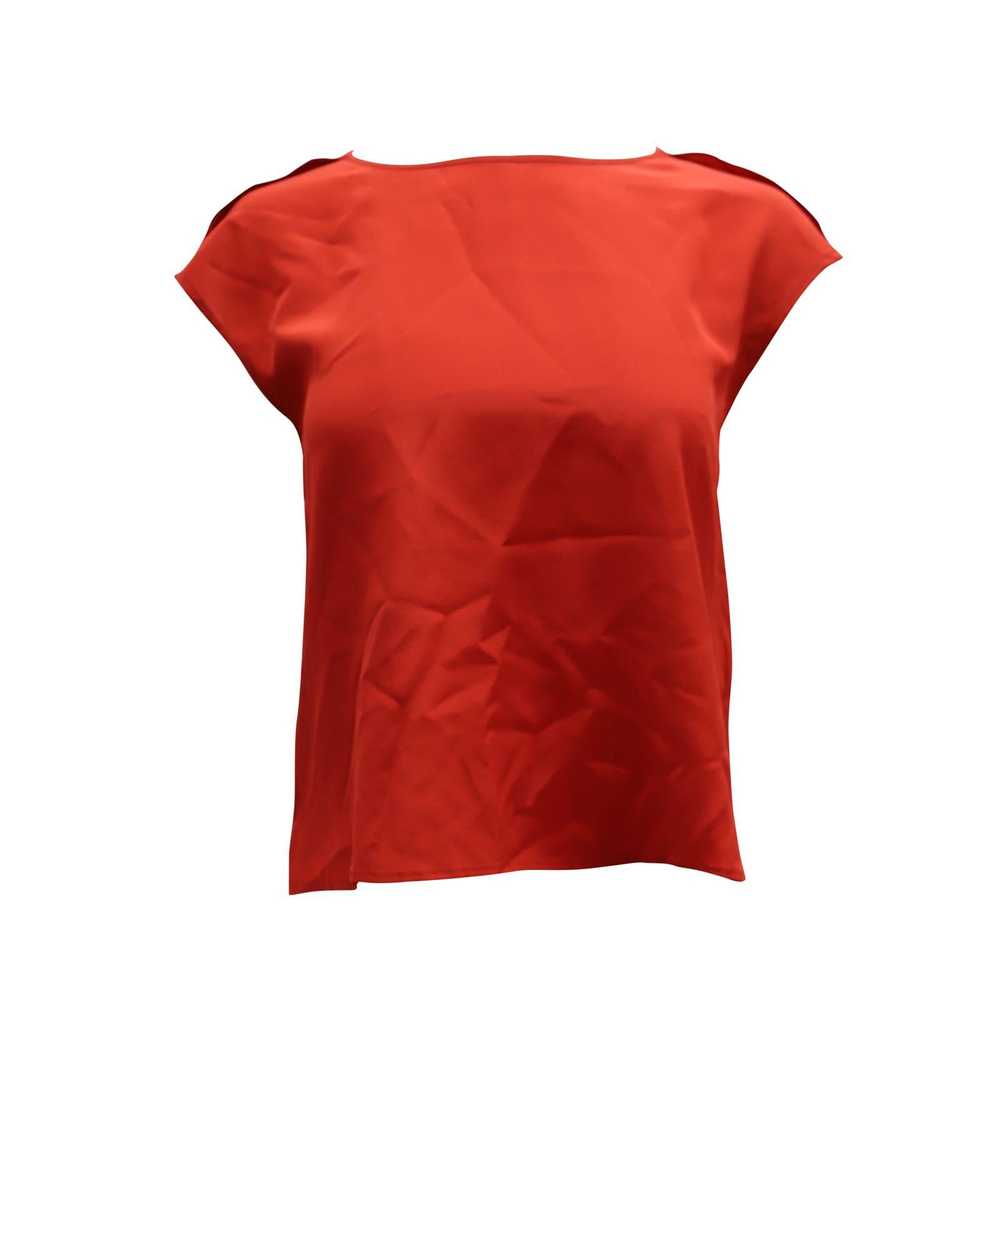 Escada Red Silk Cap-Sleeve Blouse by Escada - image 1